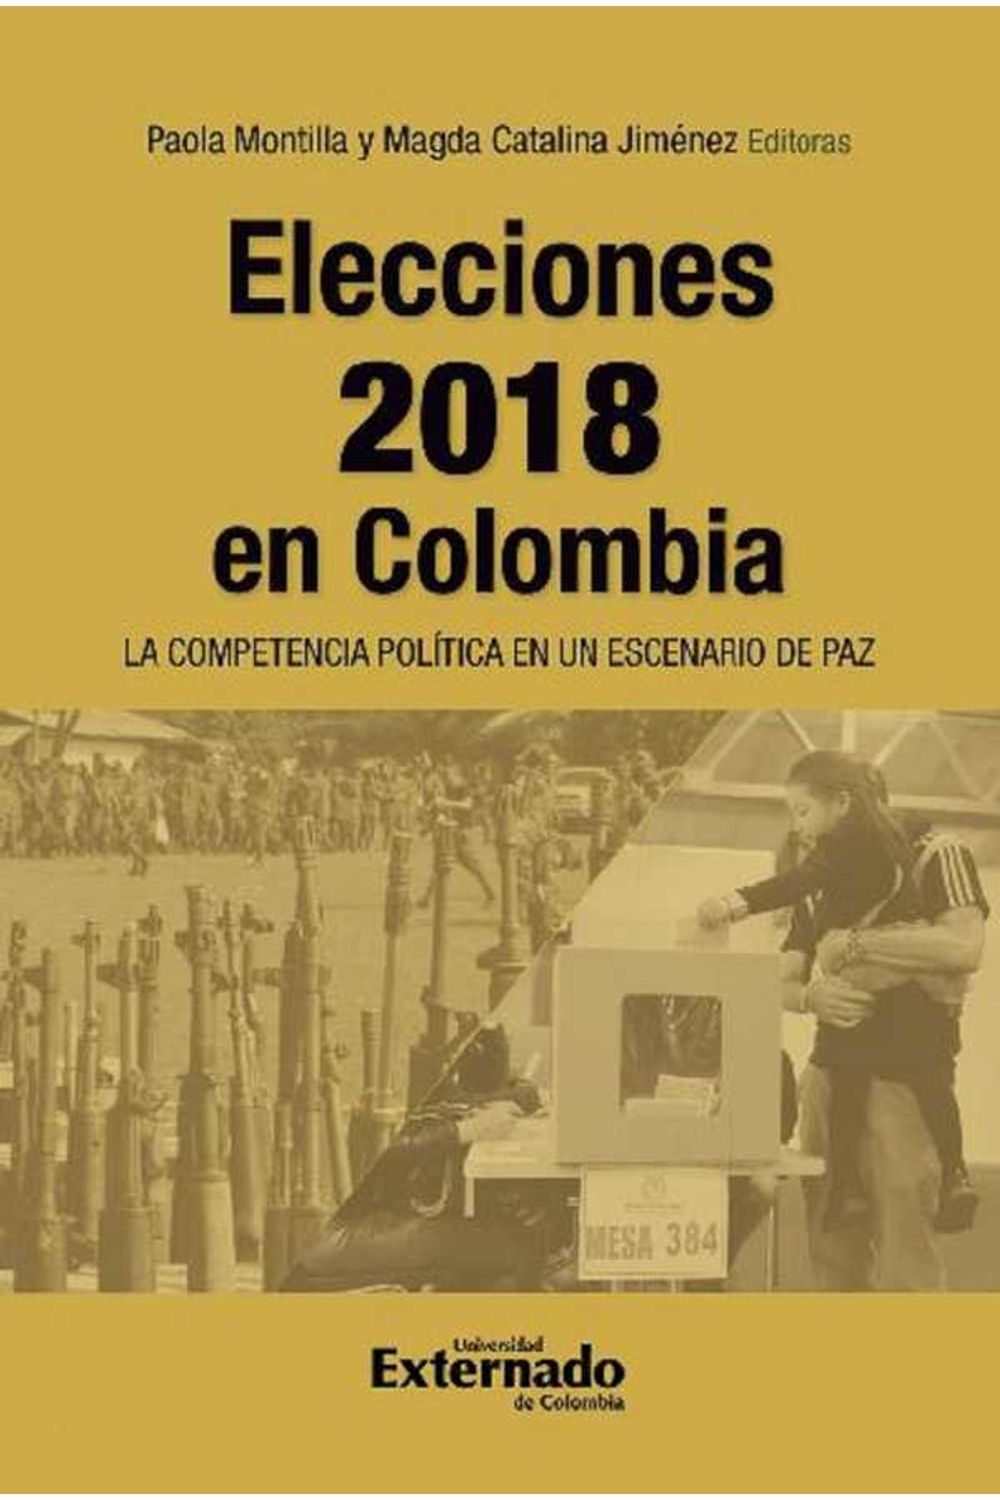 bw-elecciones-2018-en-colombia-u-externado-de-colombia-9789587903645